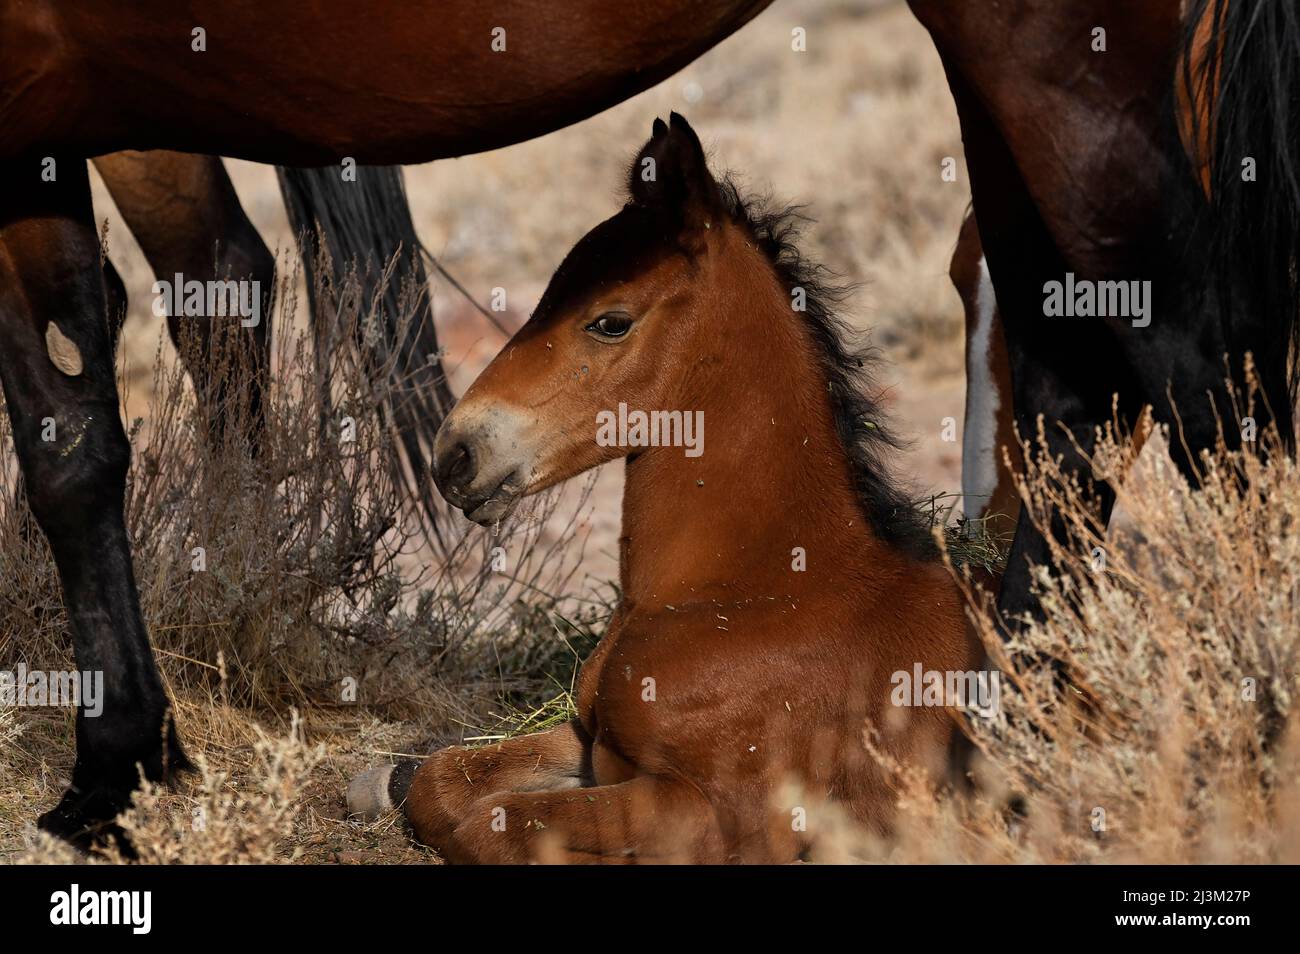 Wildpferd Fohlen auf dem Boden unter einem erwachsenen Pferd, leben in den Hügeln über einer Reno Unterteilung; Reno, Nevada, Vereinigte Staaten von Amerika Stockfoto